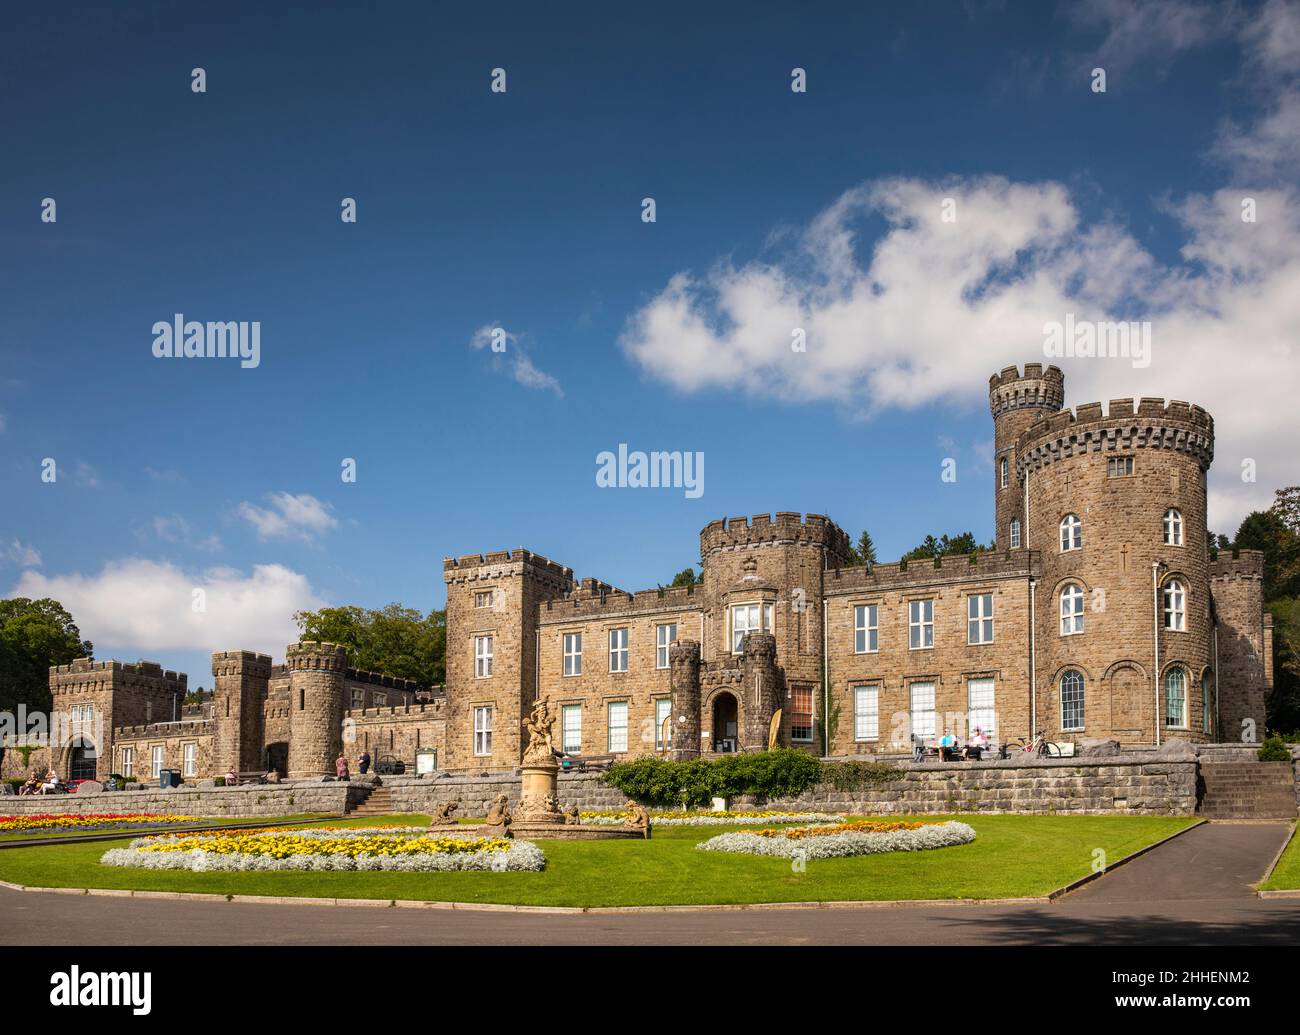 Reino Unido, Gales, Merthyr Tydfil, Cyfartha Castle Park, coloridos lechos de flores en la entrada del castillo Foto de stock